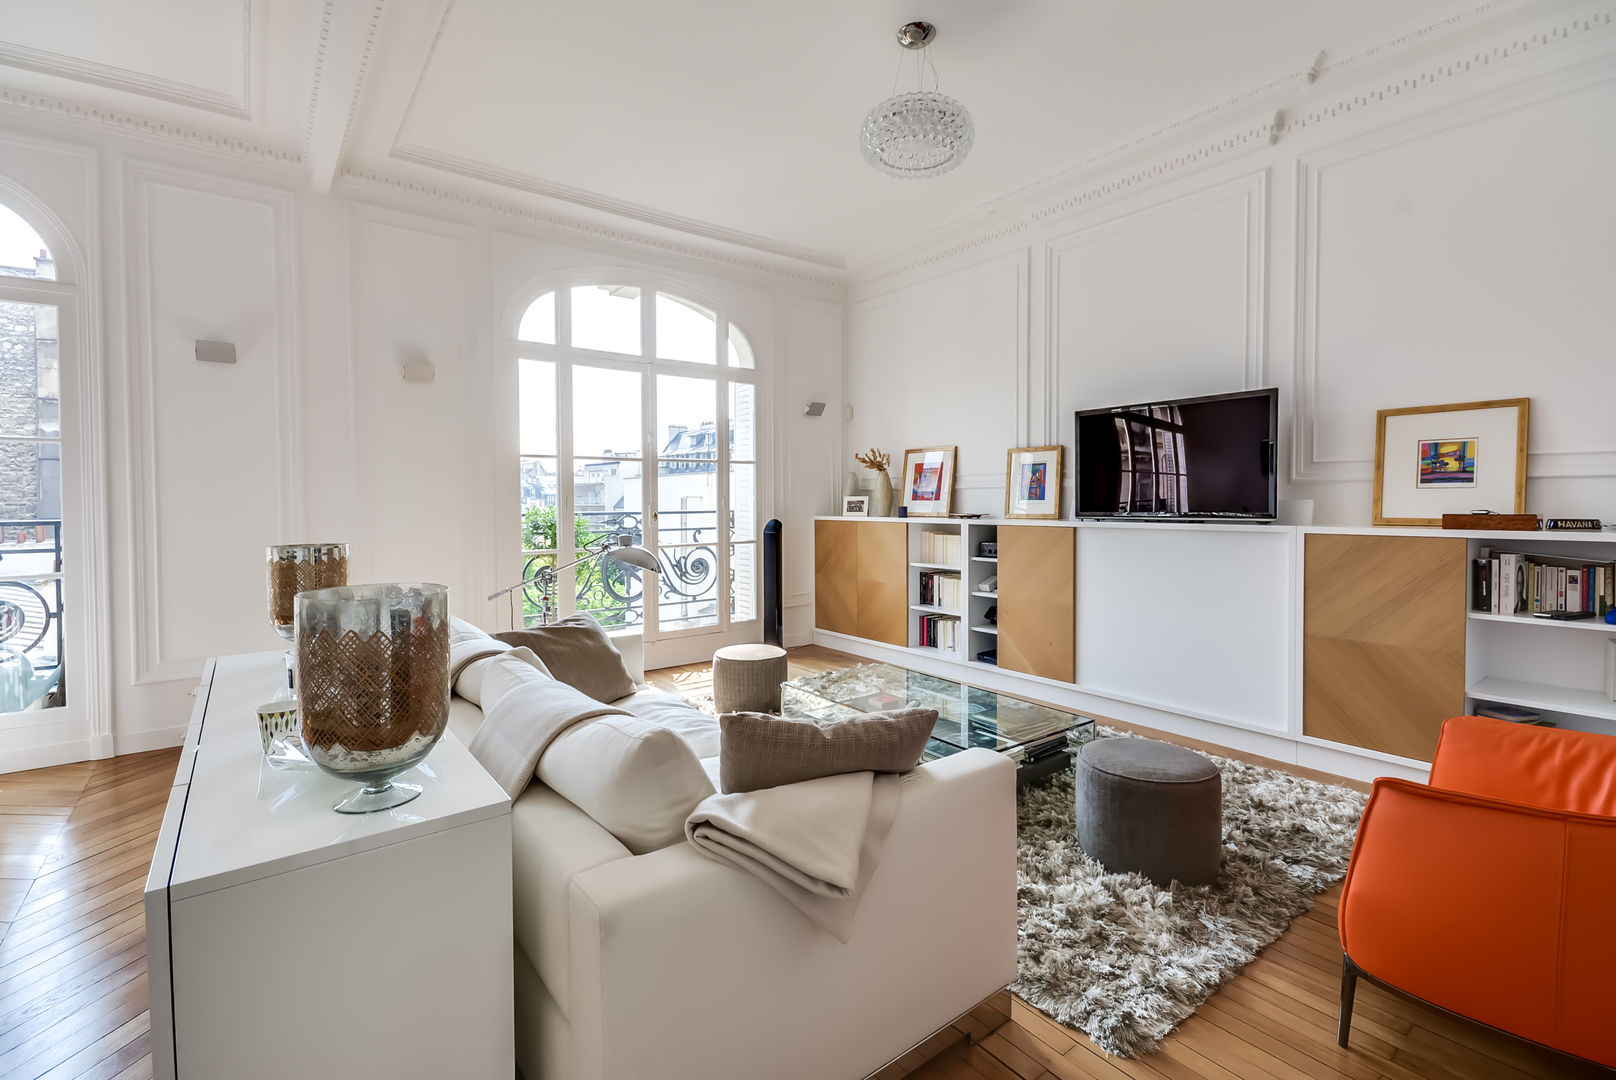 Un appartement haussmanien revisité - Paris 16e, ATELIER FB ATELIER FB Ruang Keluarga Modern